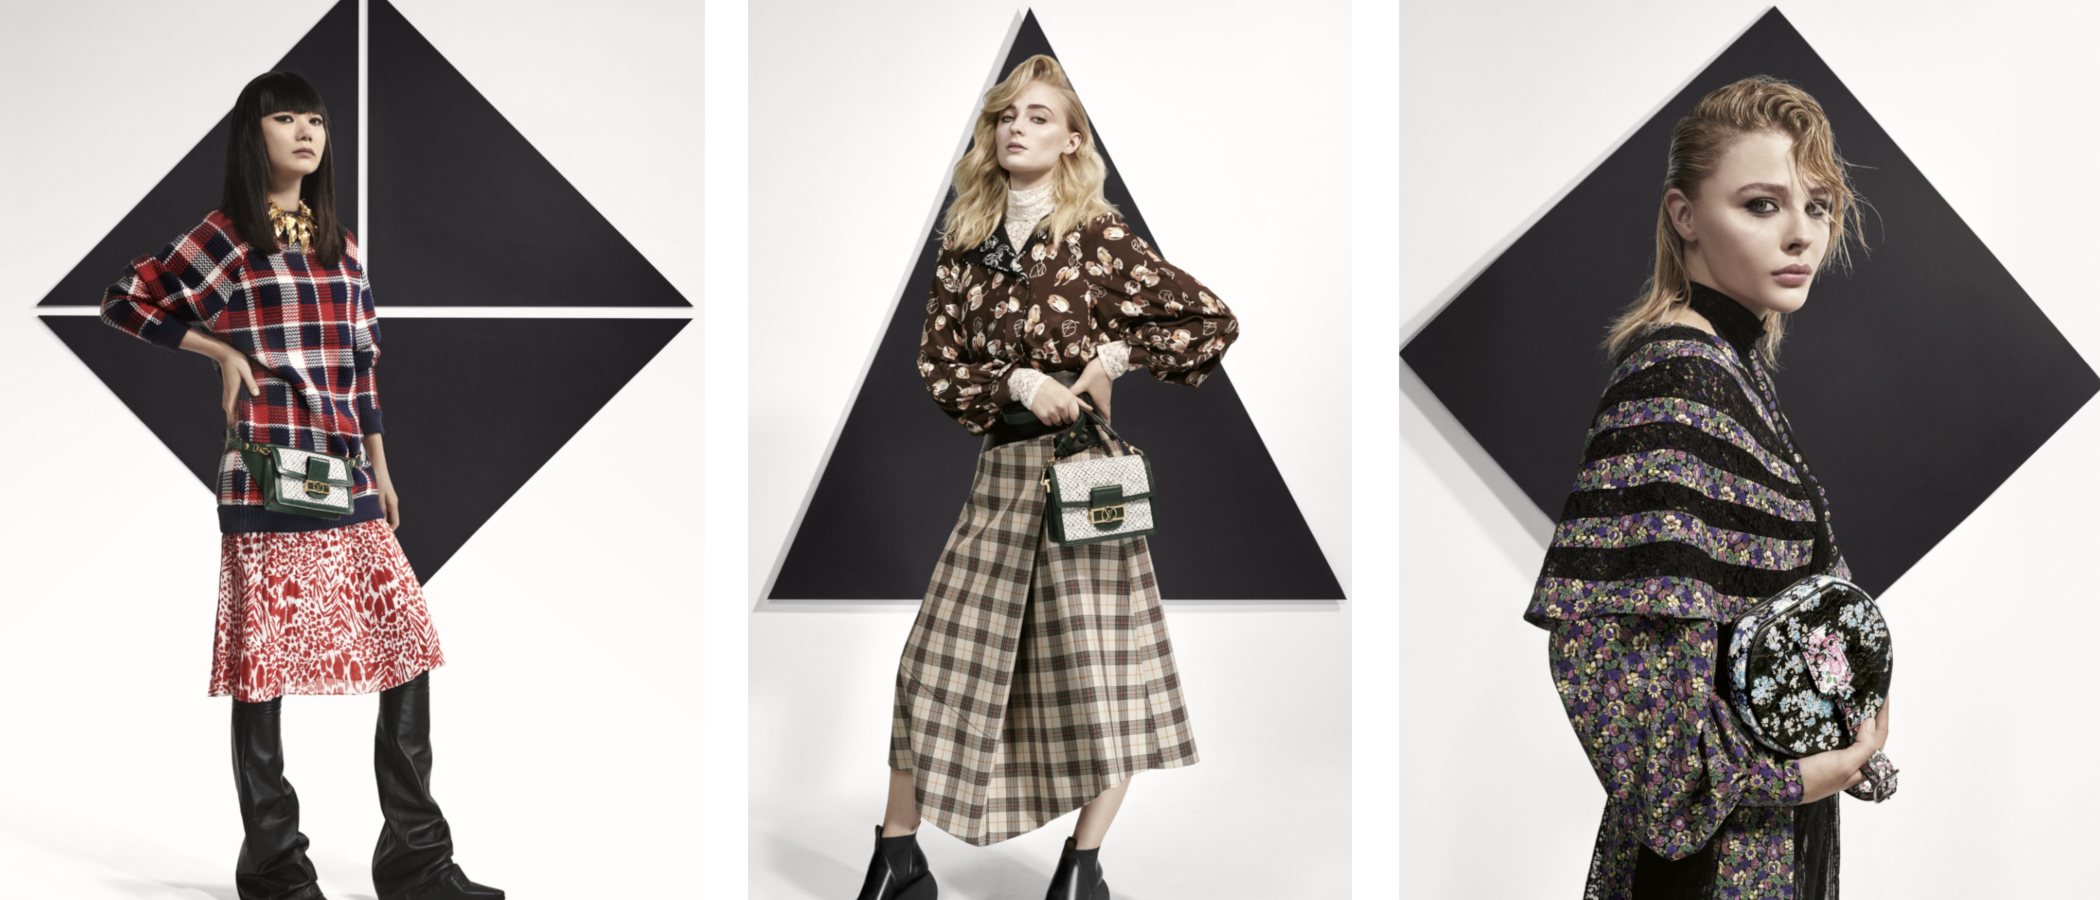 Louis Vuitton lanza la colección Pre-Fall 2019 protagonizada por un reparto muy especial